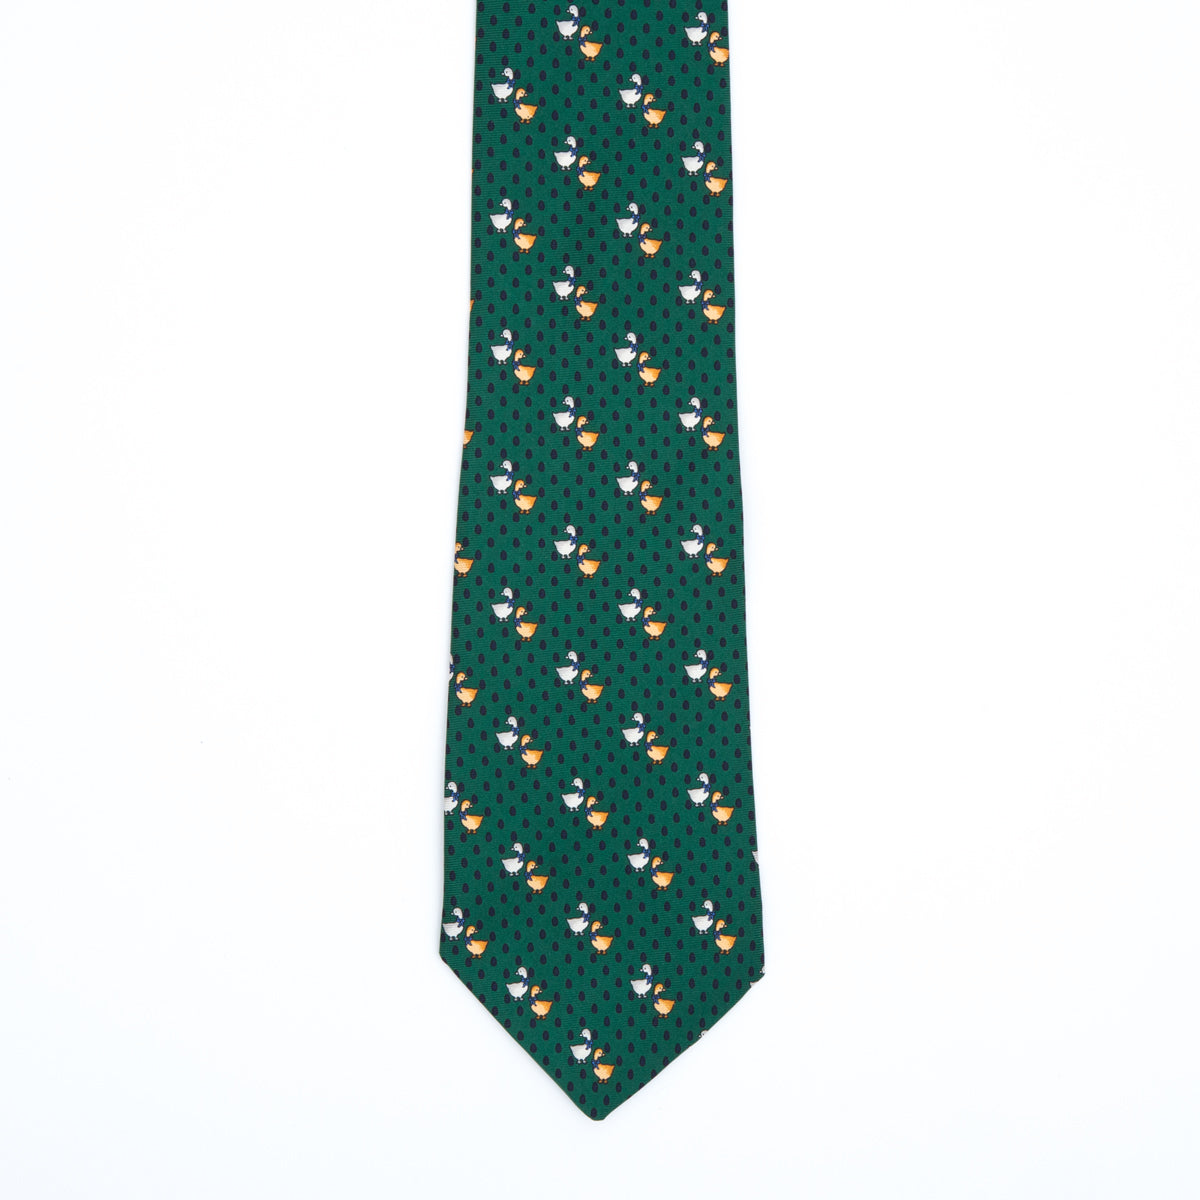 Duck fantasy tie